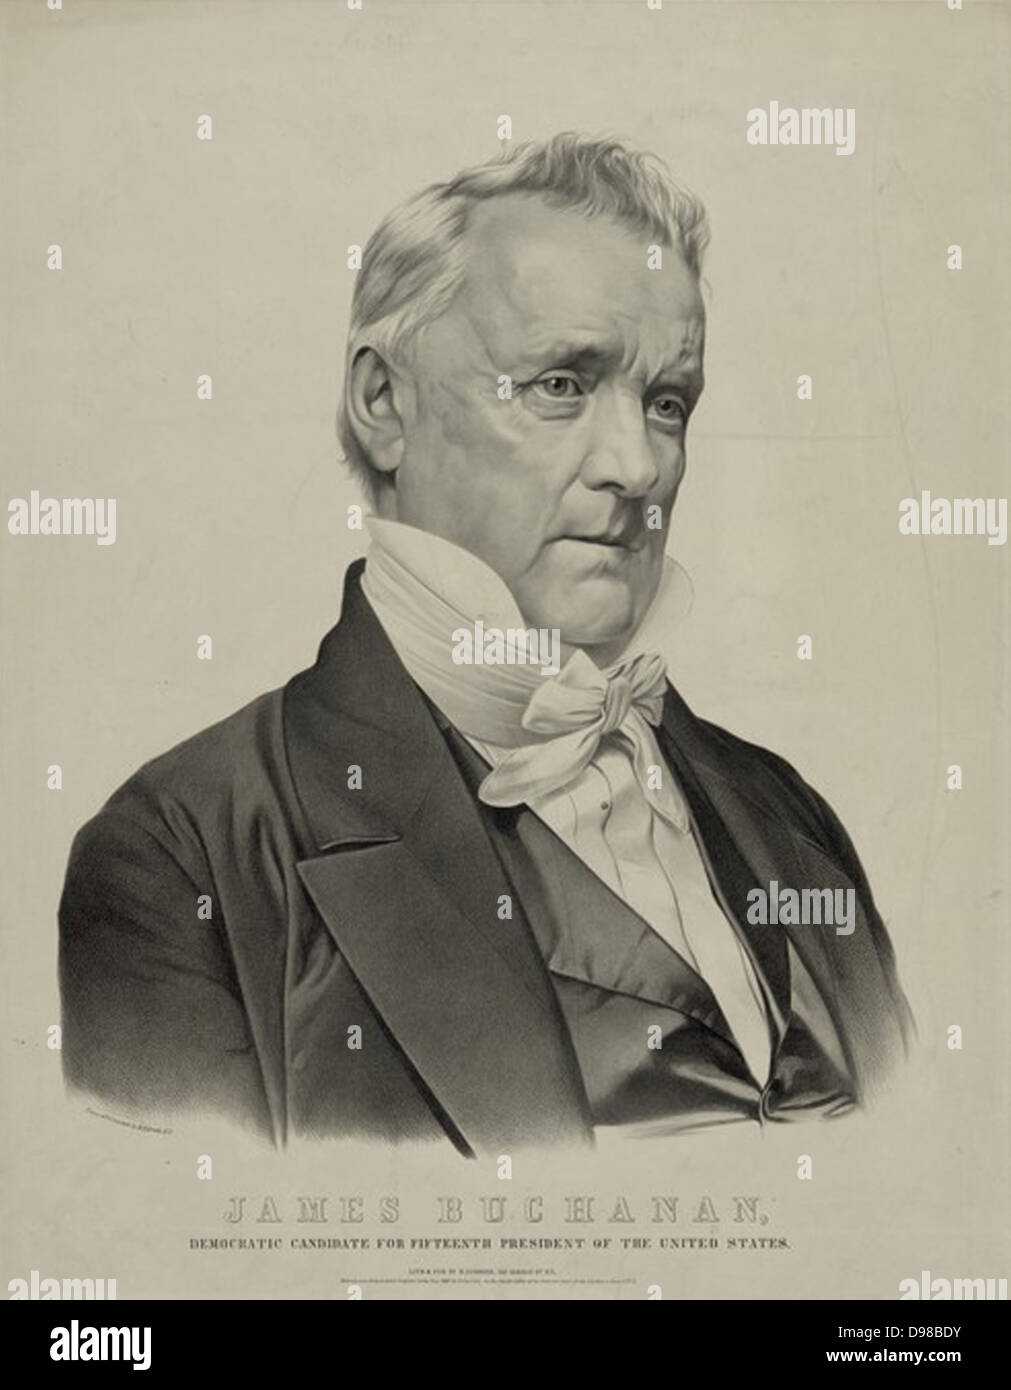 James Buchanan (1791-1868) 15. Präsident der Vereinigten Staaten von Amerika, 1857-1861. Lithographie. Stockfoto